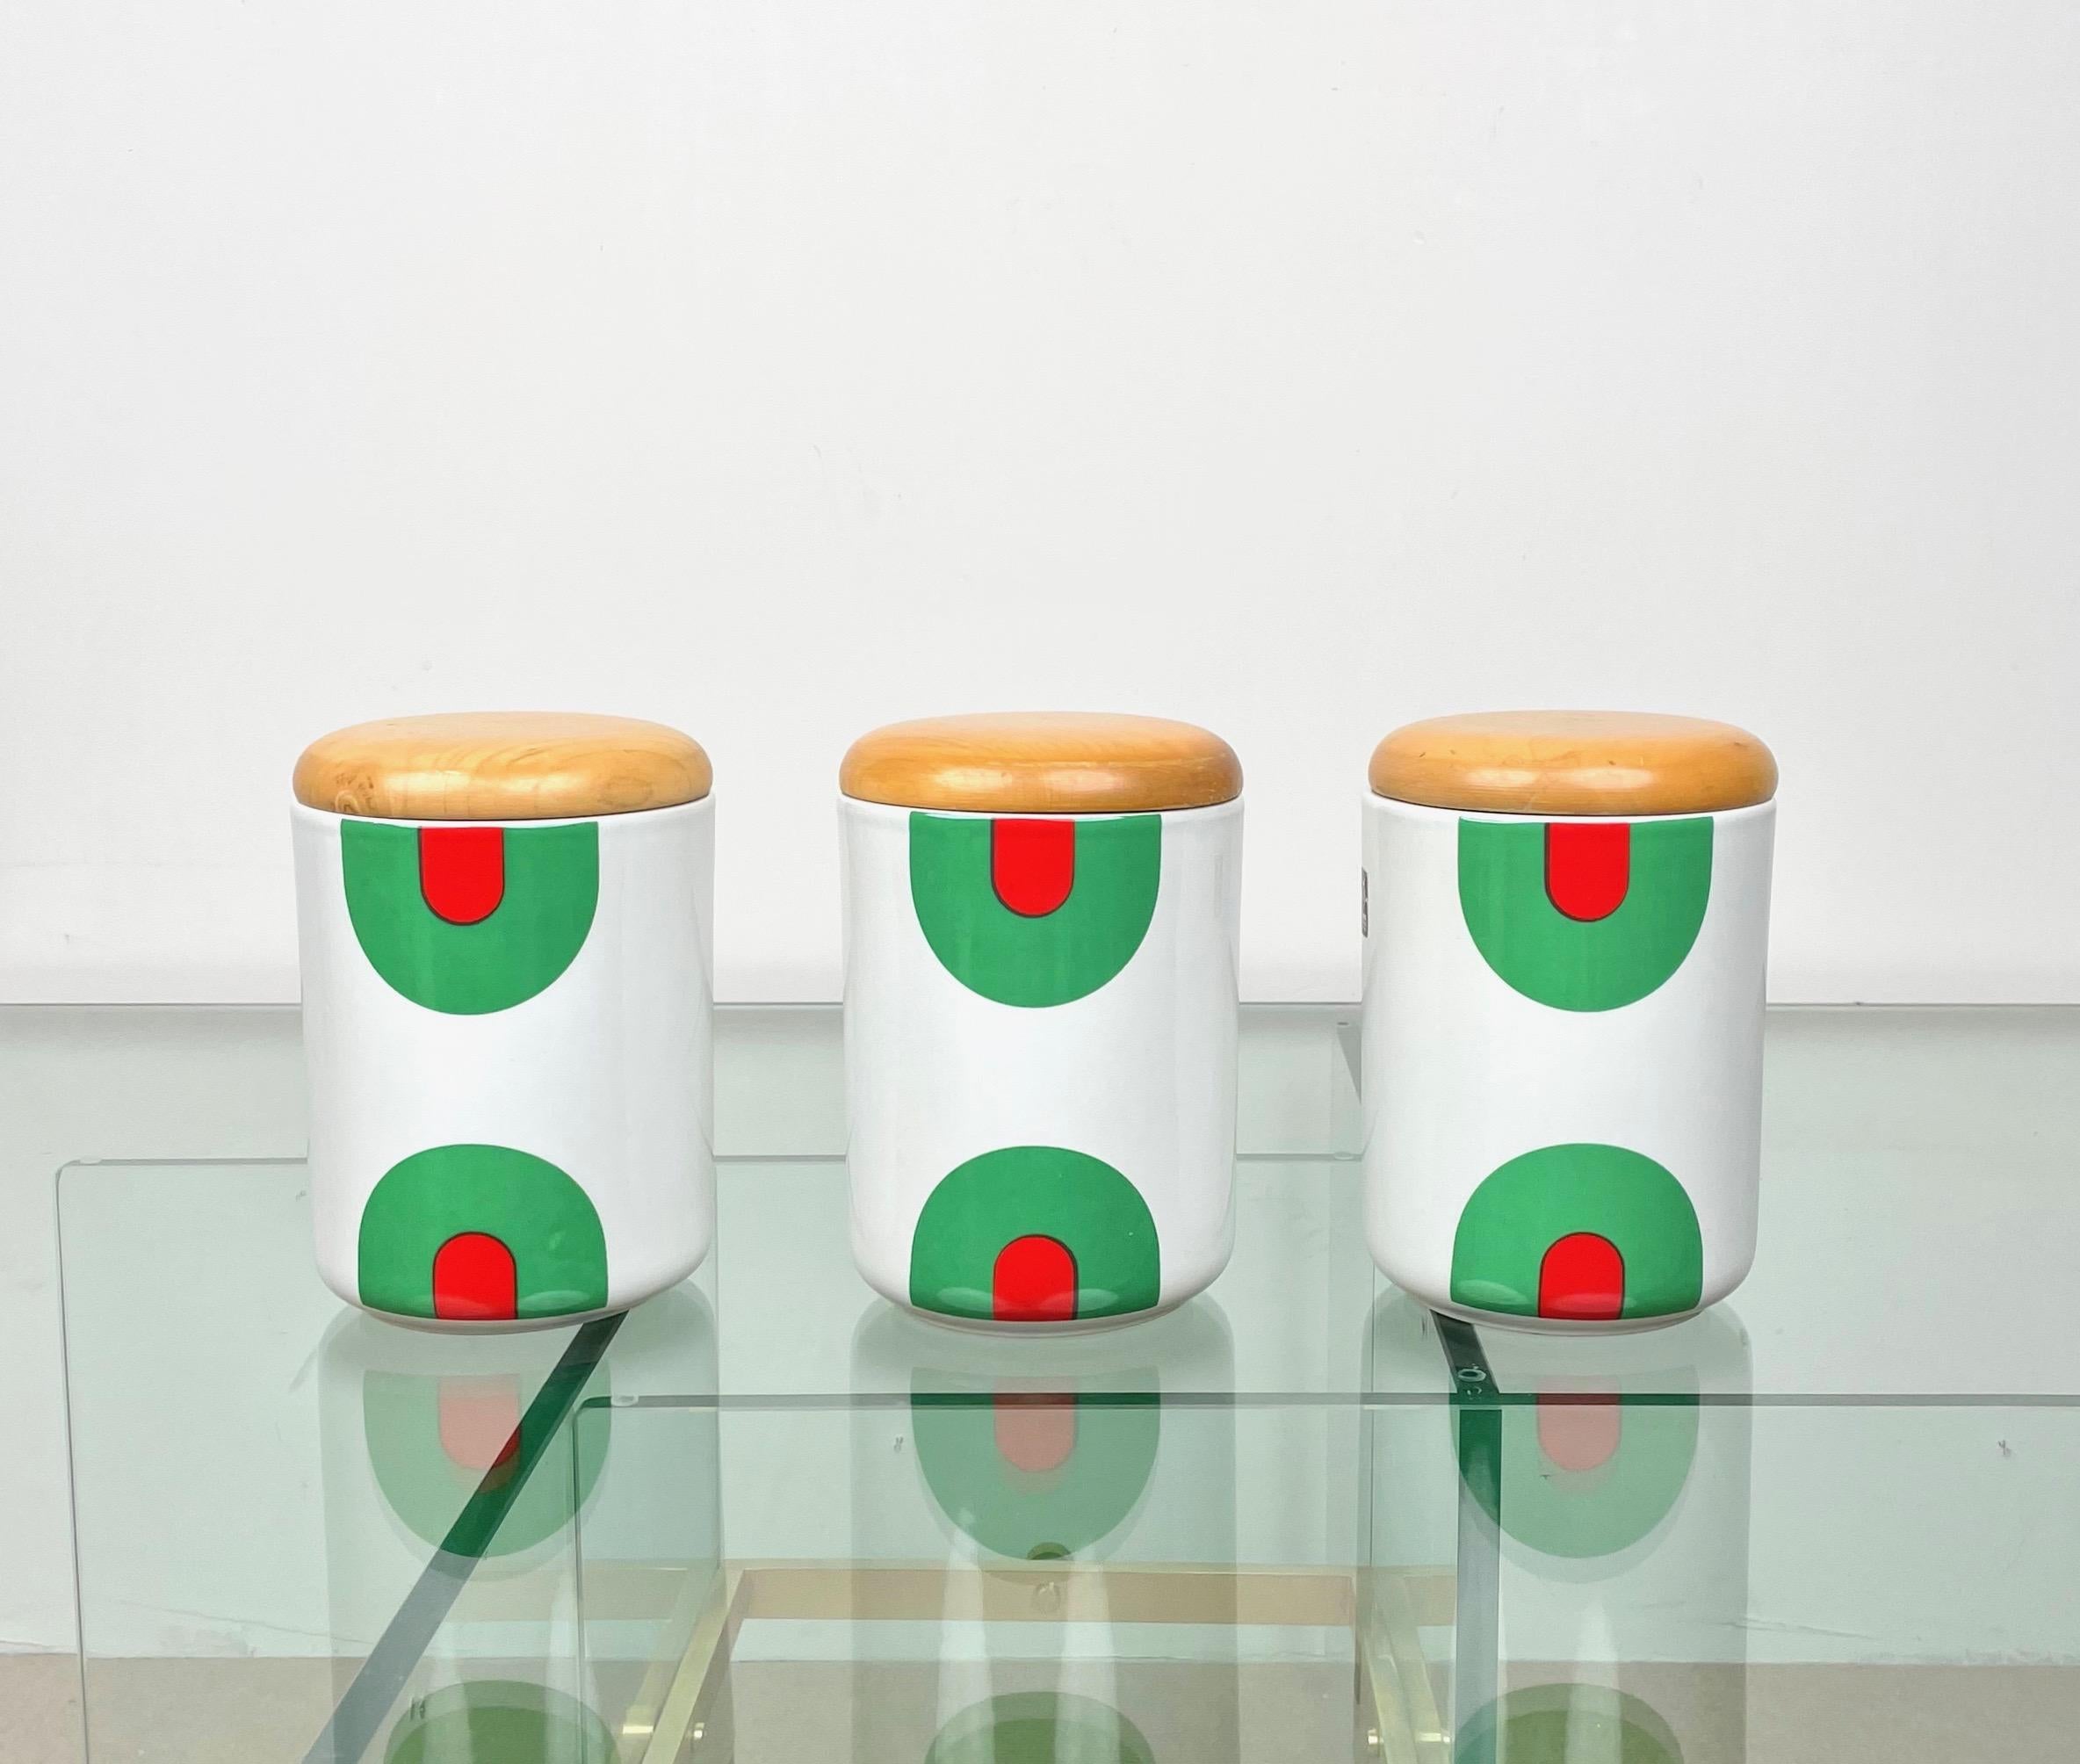 Set de trois vases-boîtes en céramique avec couvercle en bois par le designer italien Franco Pozzi. 

Fabriqué en Italie dans les années 1970. 

La signature originale est encore visible sur le fond des boîtes, comme le montrent les photos.